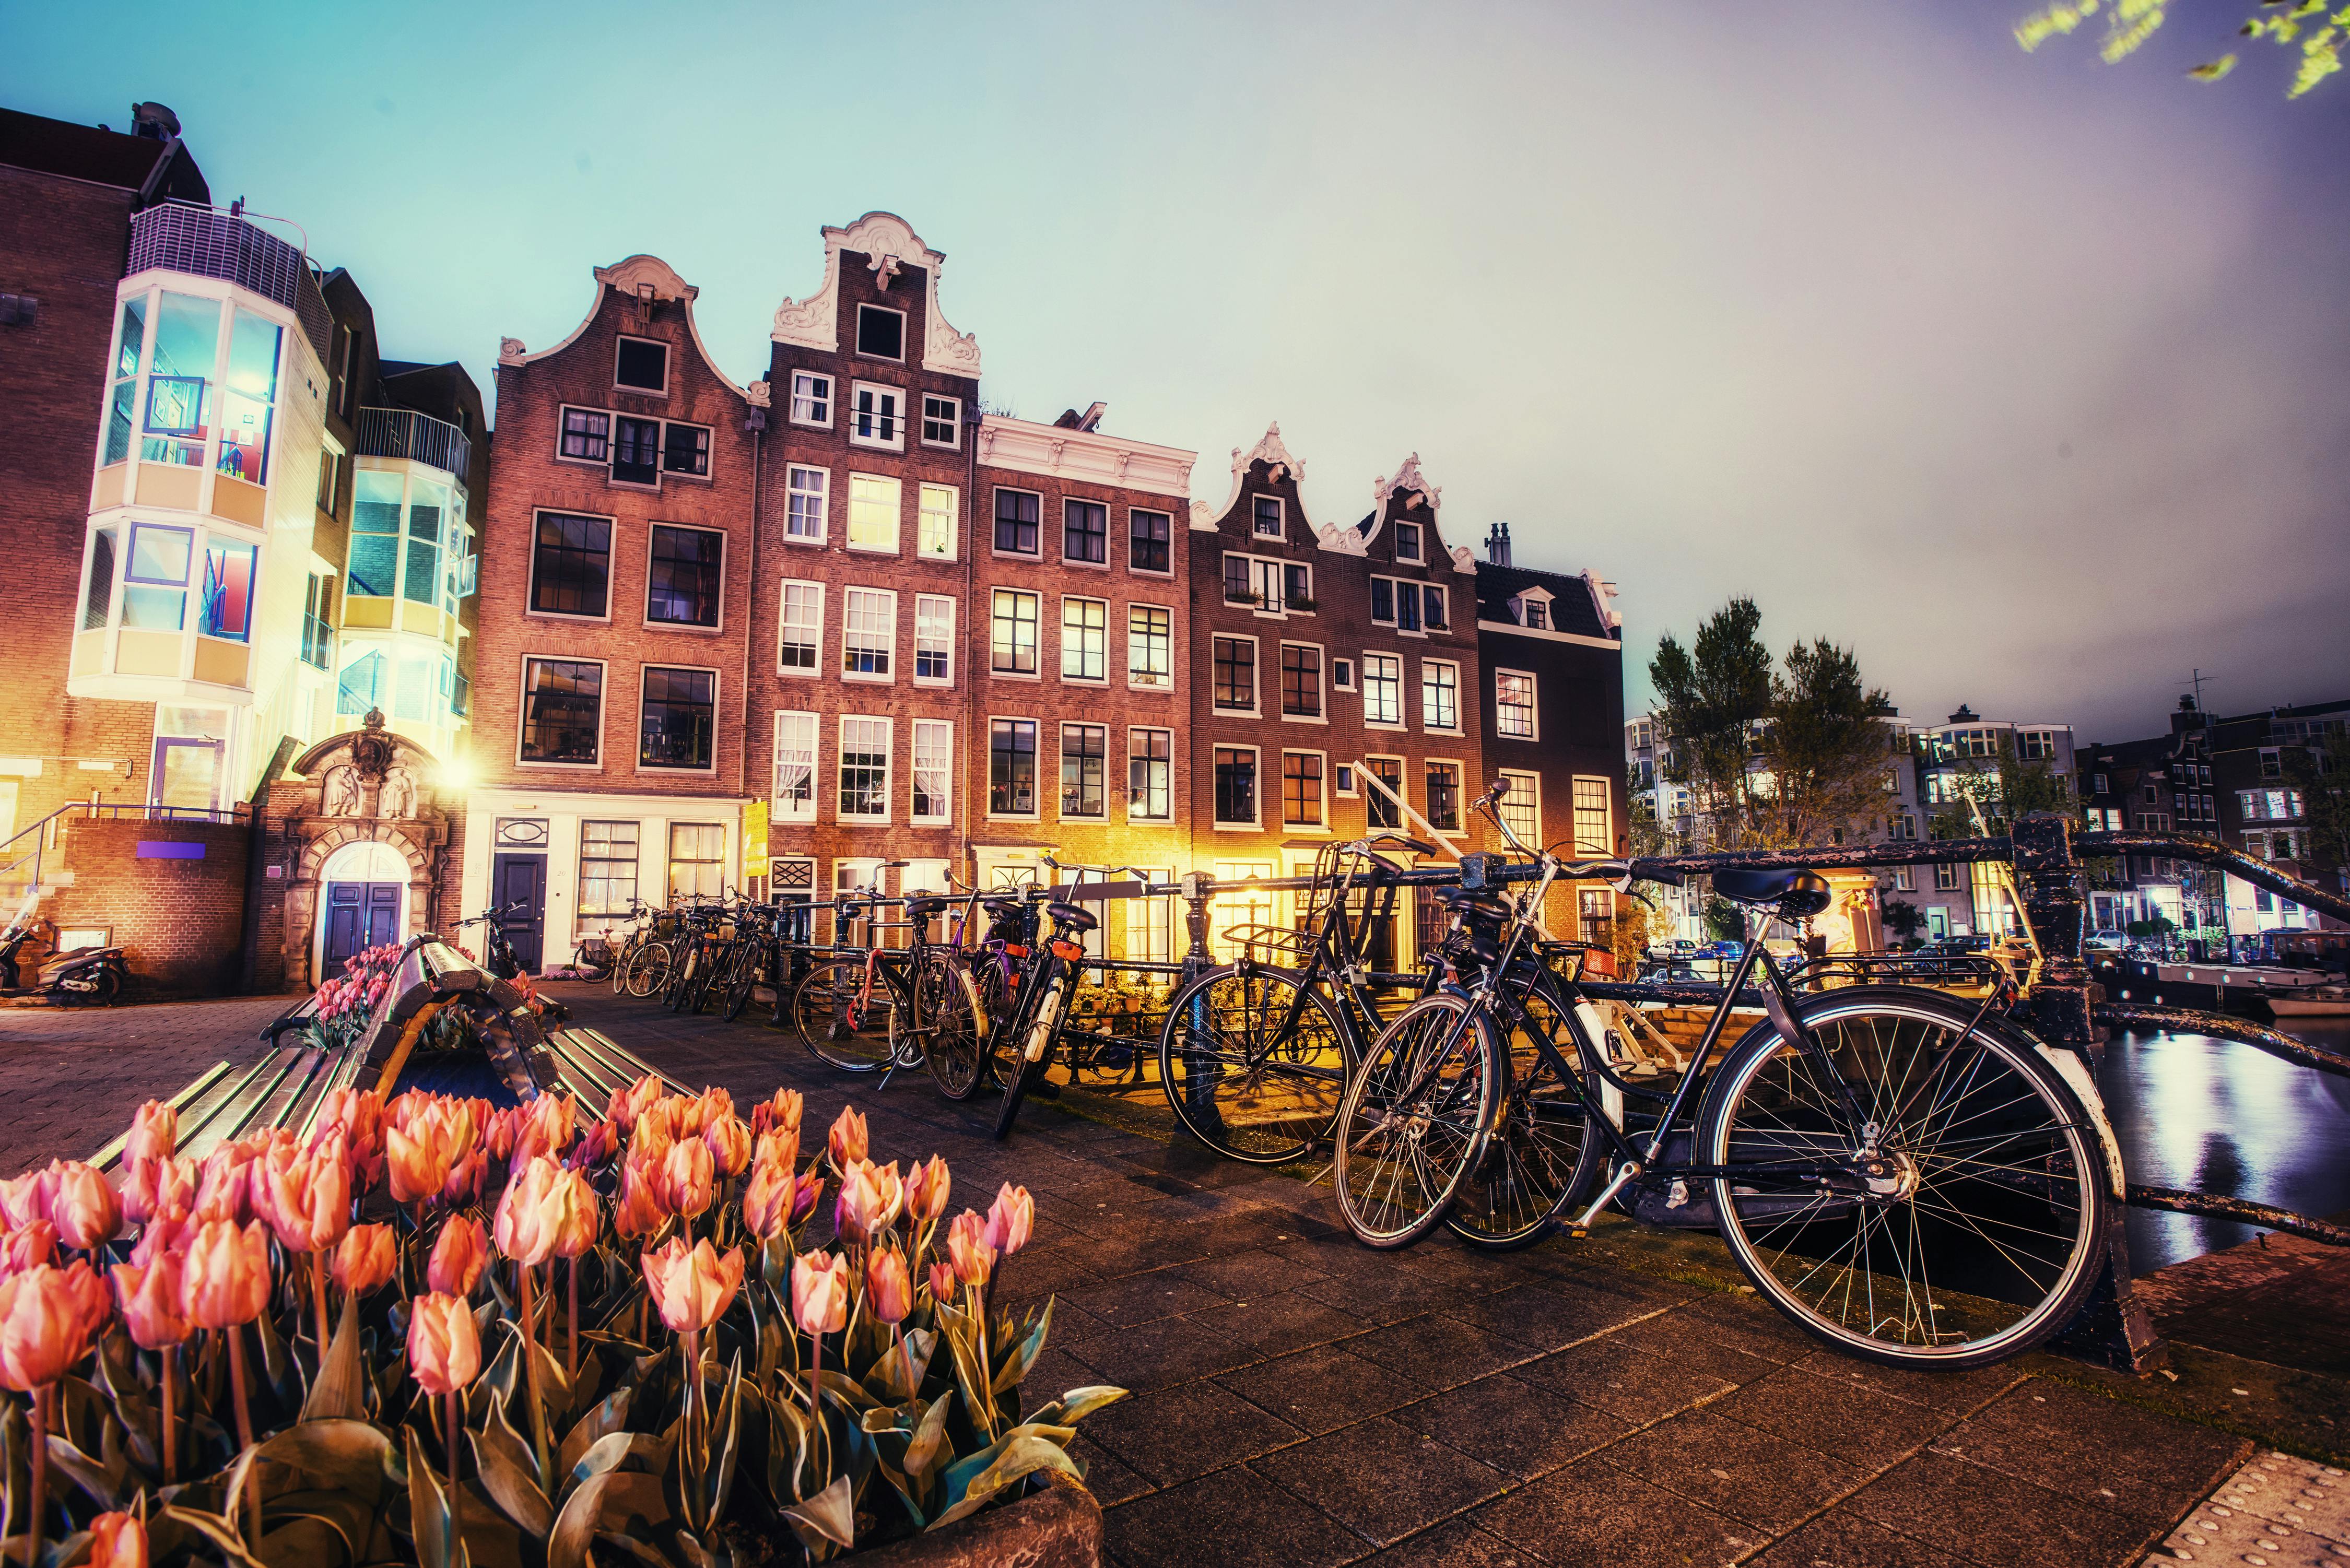 Näkymässä Amsterdamin värikkäitä taloja ja polkupyöriä.